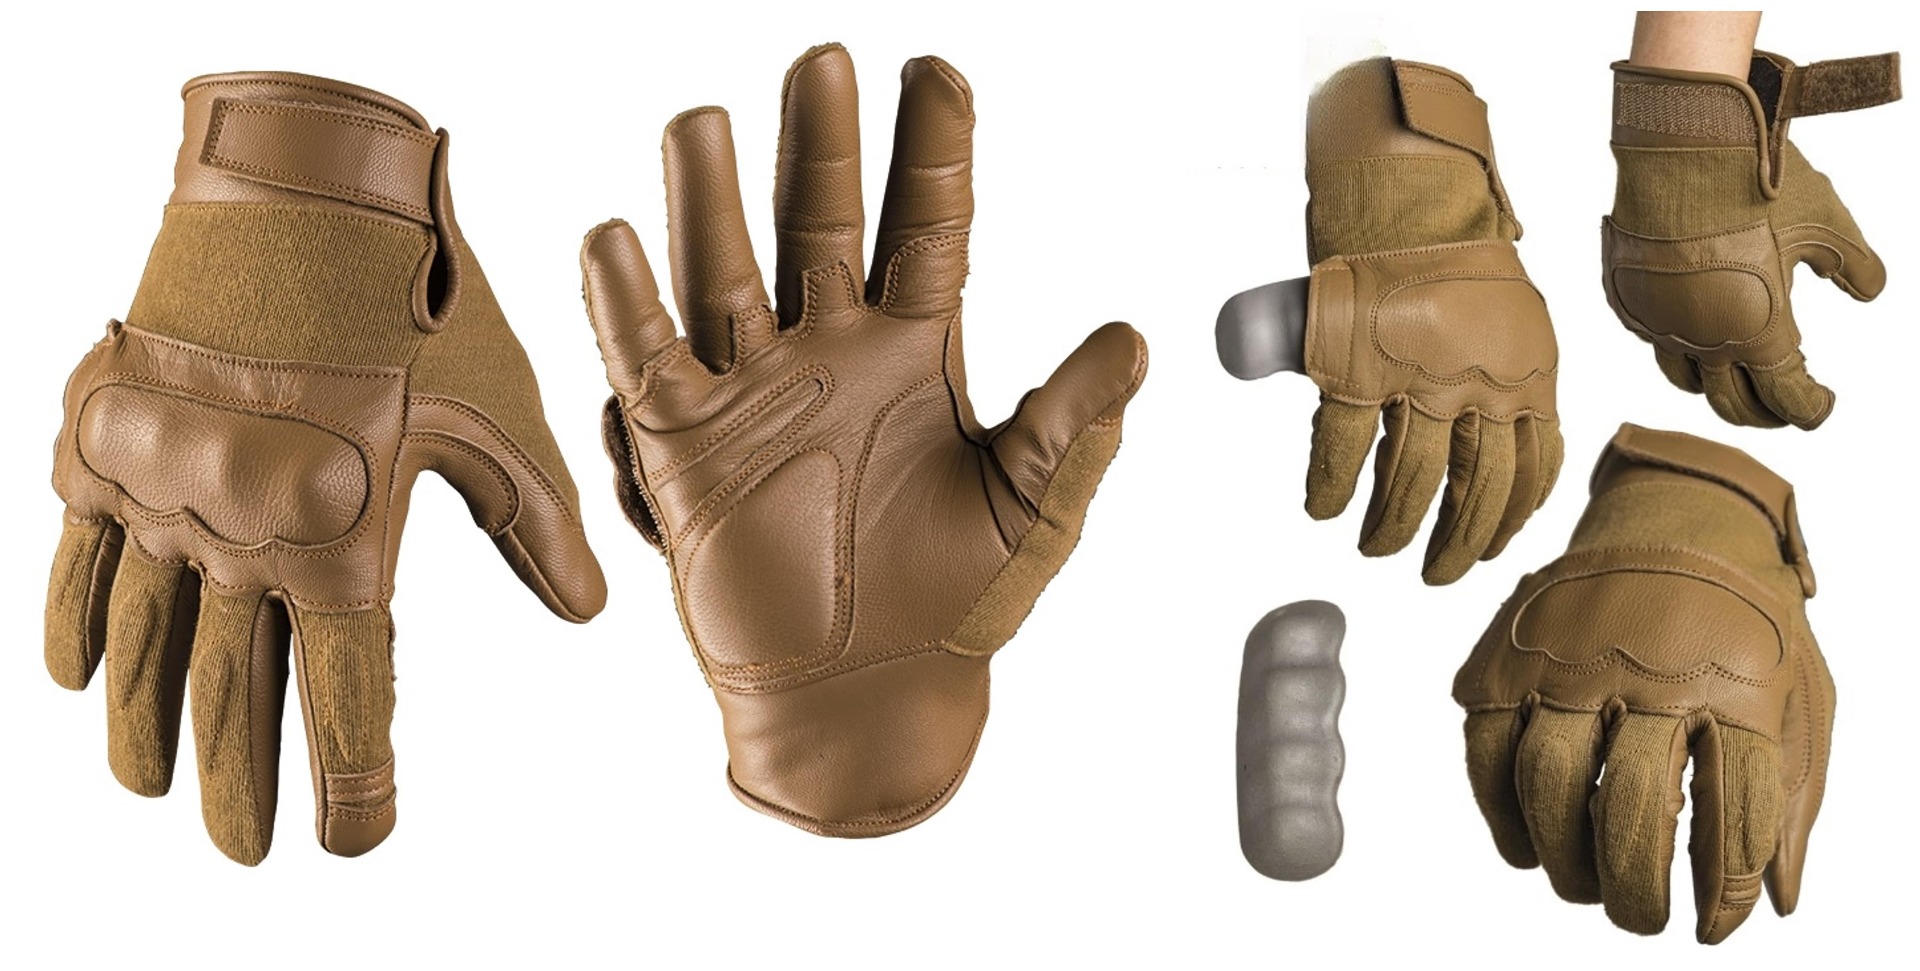 Izberite vrhunske taktične usnjene aramid rokavice, odporne na reze, coyote barve. Zagotovite si vrhunsko zaščito in udobje pri delu z odličnim oprijemom. Vzdržljive, trpežne, in večnamenske rokavice za industrijske in obrtniške dejavnosti. Opremljen.si 